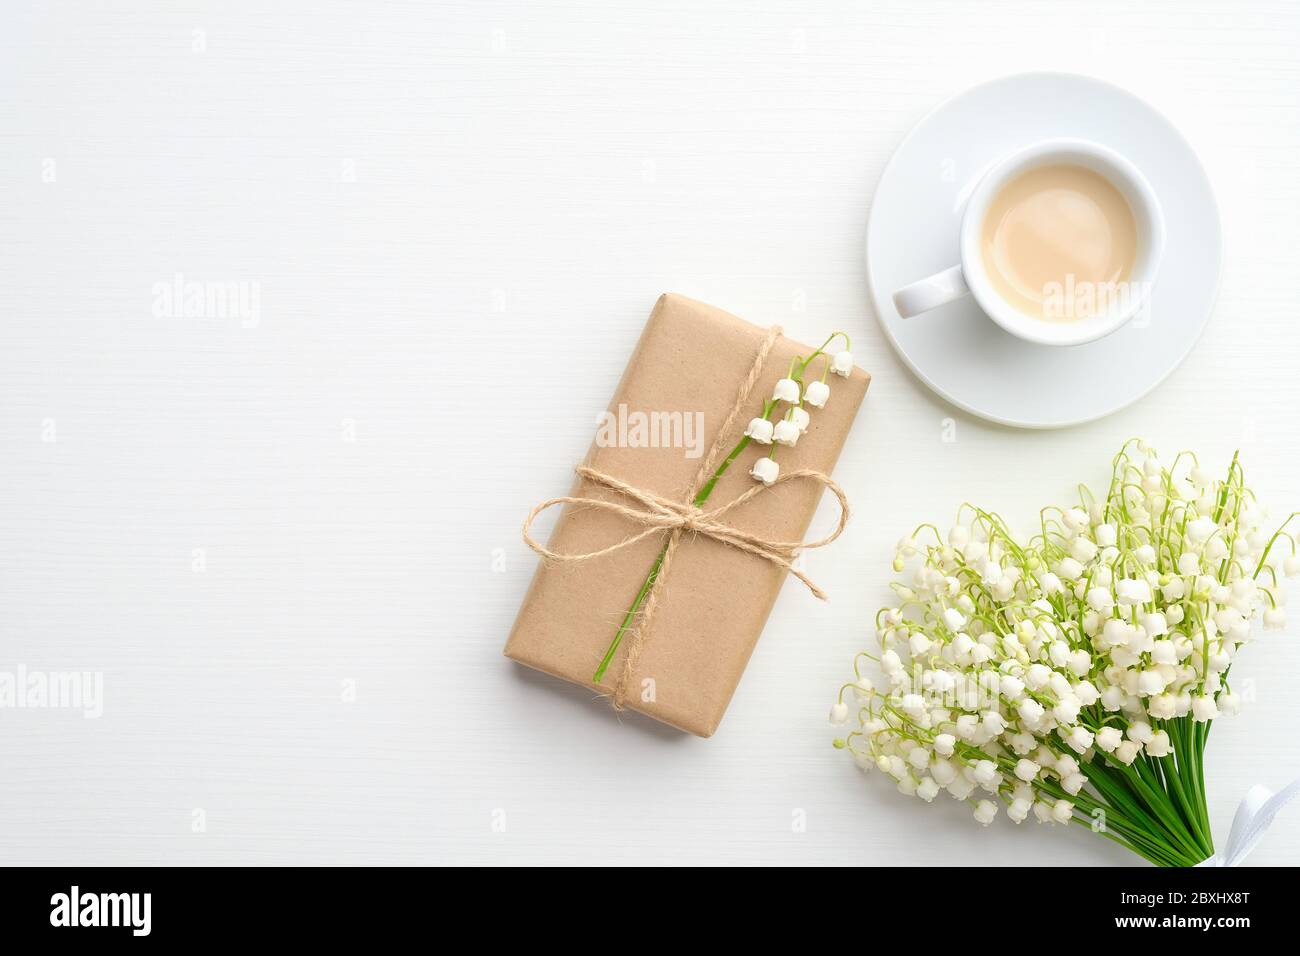 Boîte cadeau de mariage, bouquet de fleurs de la vallée, tasse de café sur fond blanc. Flat lay, vue de dessus. Banque D'Images